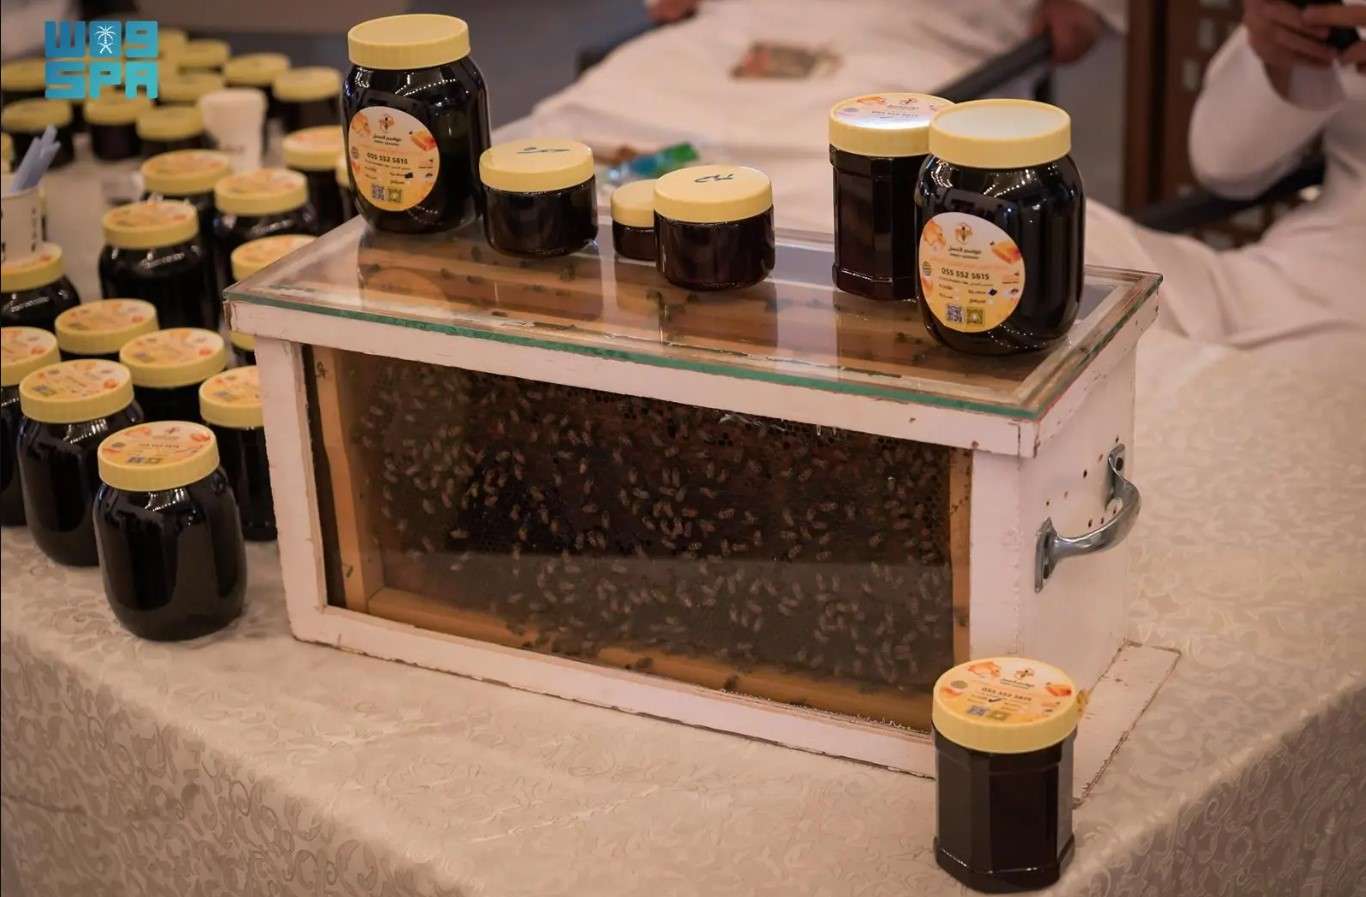 مهرجان العسل في مكة المكرمة